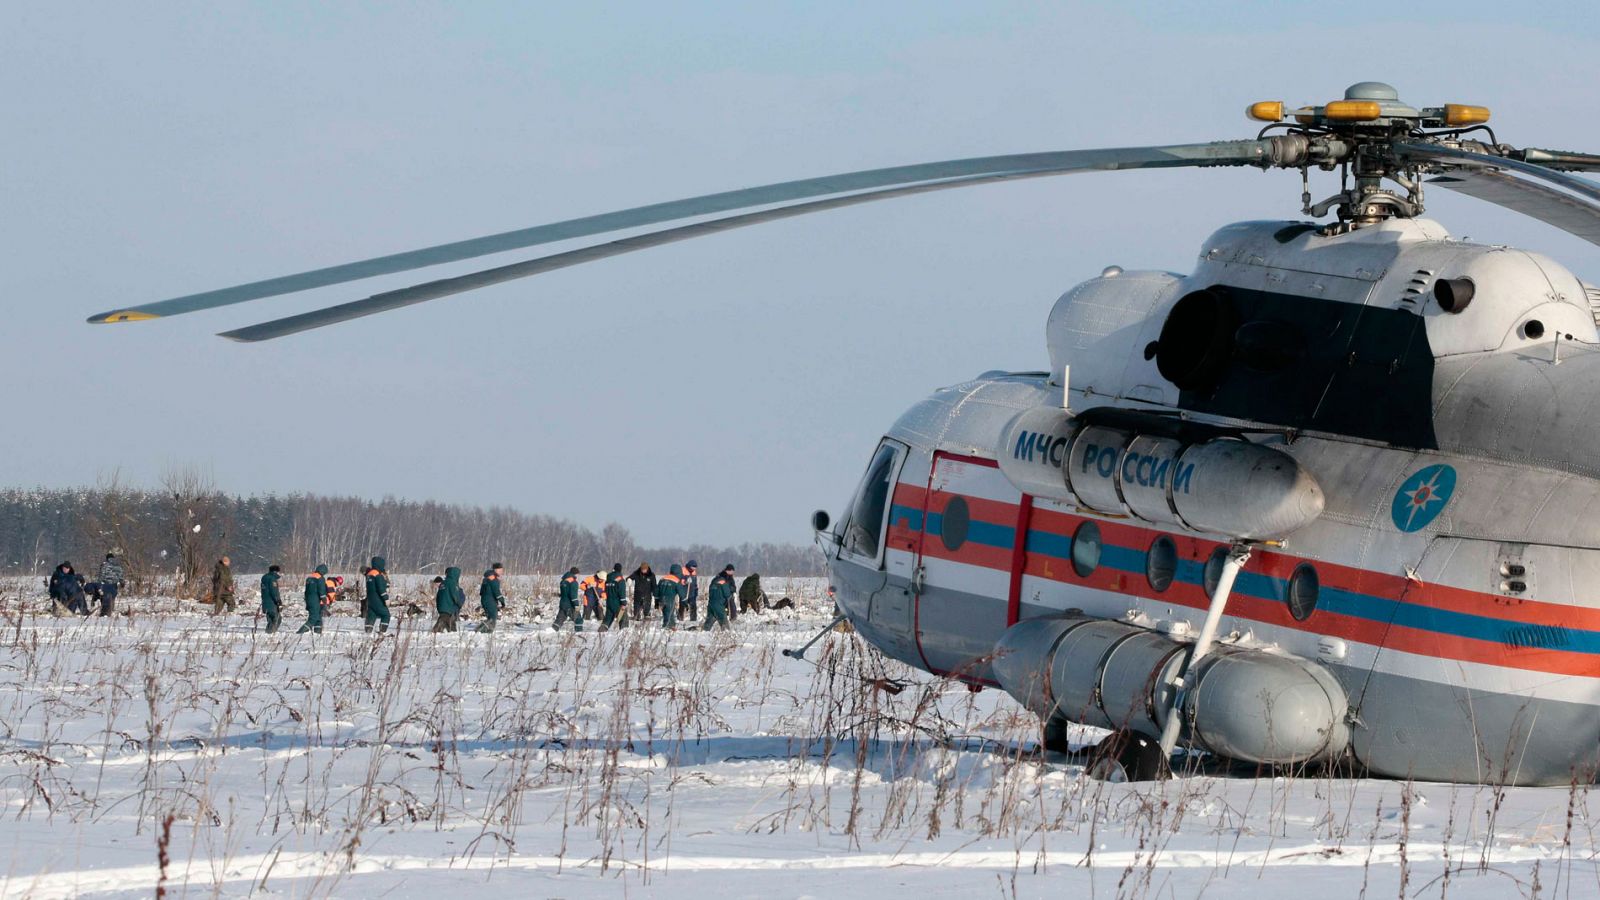 Accidente aéreo en Rusia - Recuperan las cajas negras del avión siniestrado